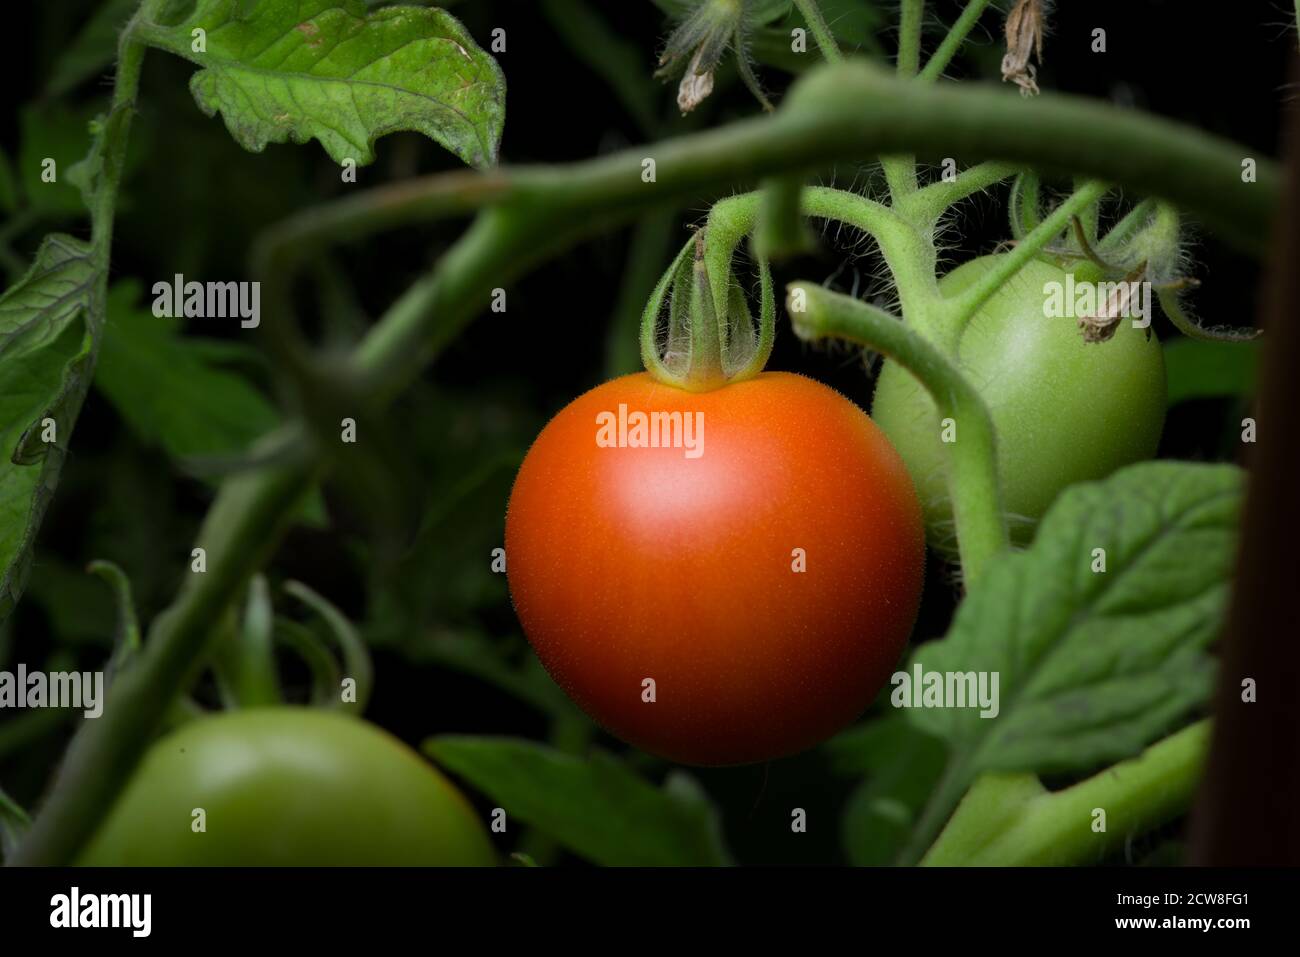 5 - Teleperspektive einer einzelnen reifen roten Tomate. Hängt zwischen dichtem Laub und grünen Blättern einer natürlichen Tomatenpflanze. Farbe Pop, Kopierbereich Stockfoto